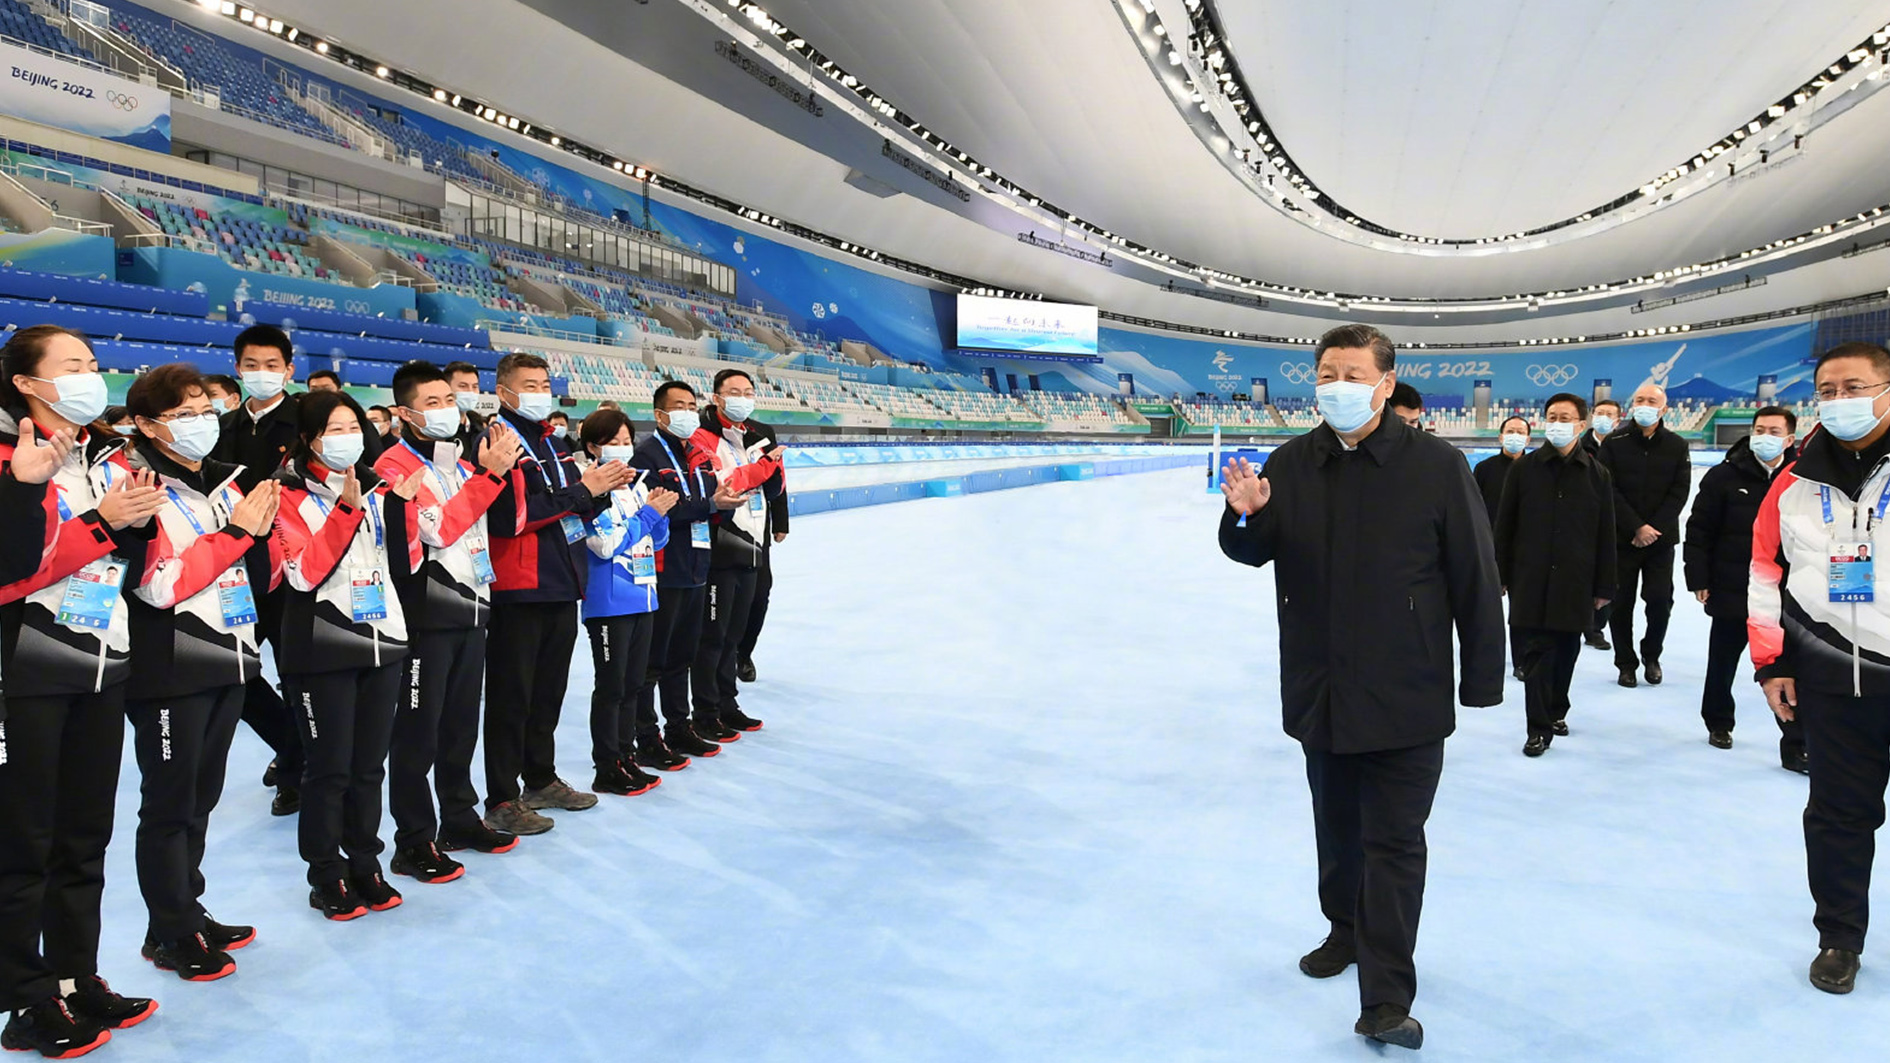 Beijing 2022 winter olympics